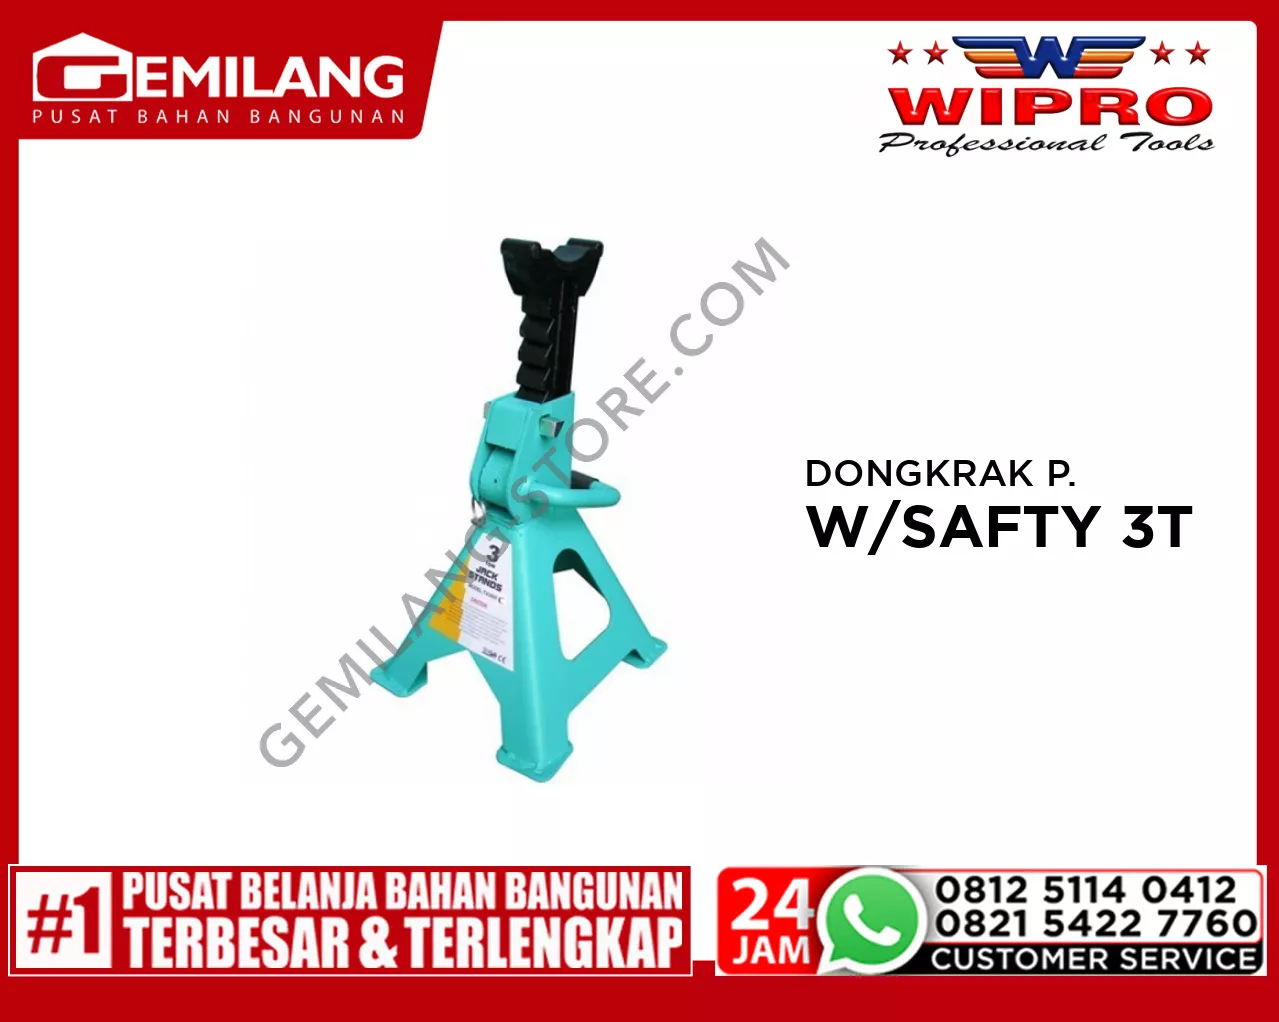 WIPRO DONGKRAK PENYANGGA SI (T43001C) W/SAFETY 3T